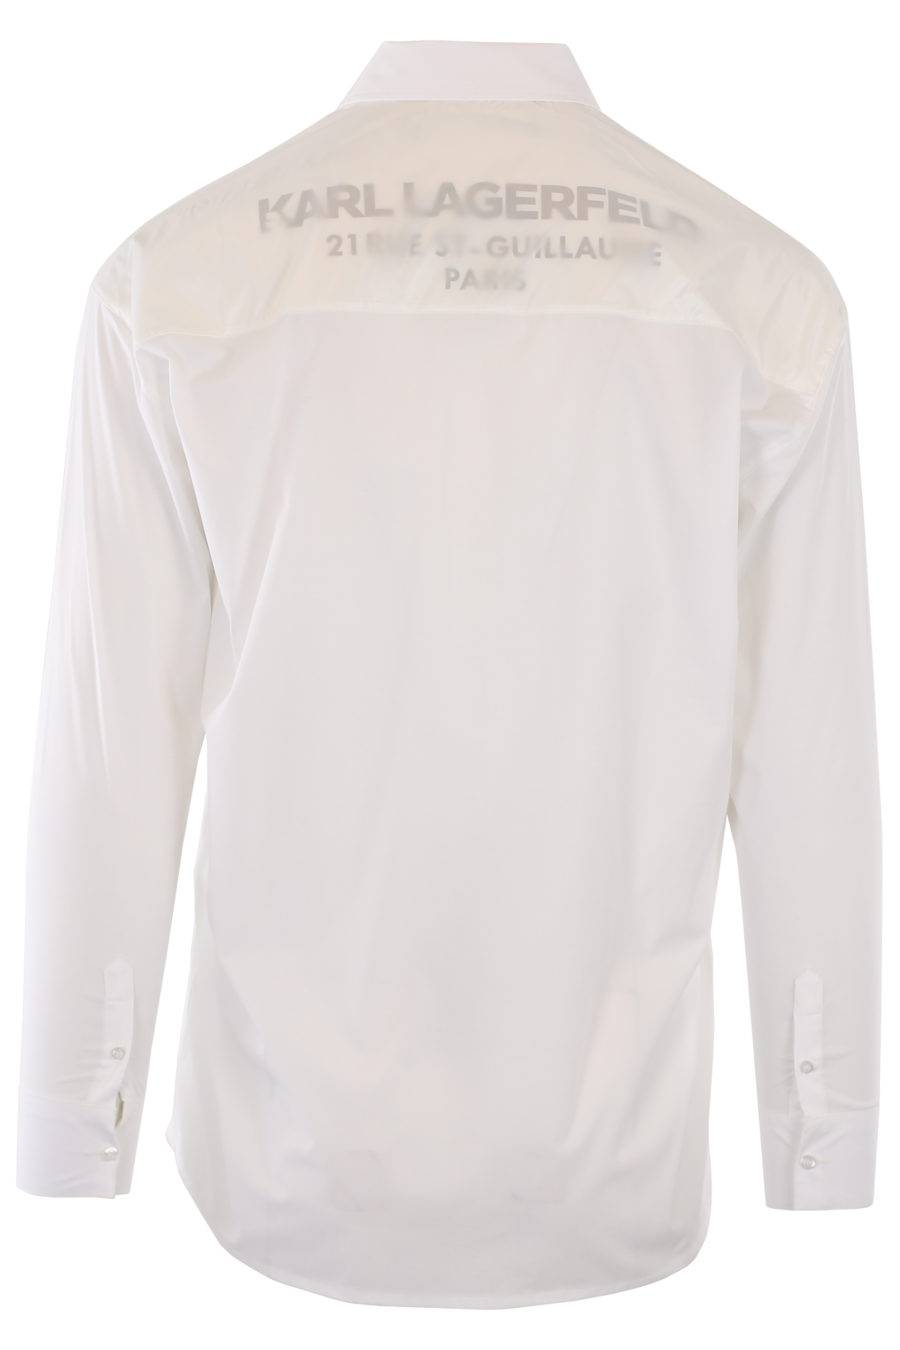 Camisa blanca con logo negro y detalle en satín - IMG 1144